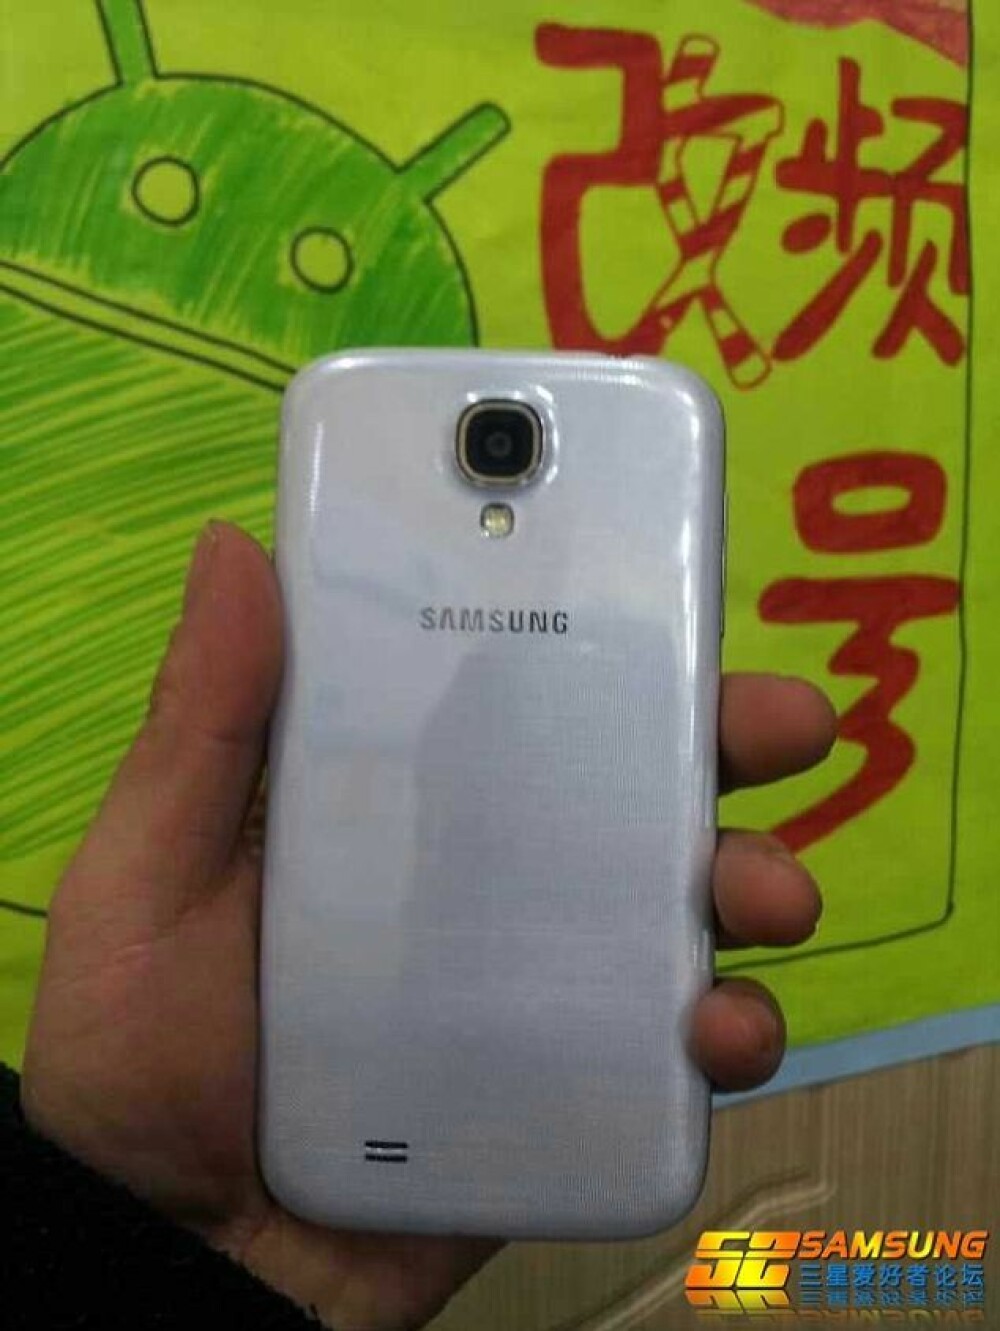 Samsung Galaxy S4, prezentat inainte de lansare: 